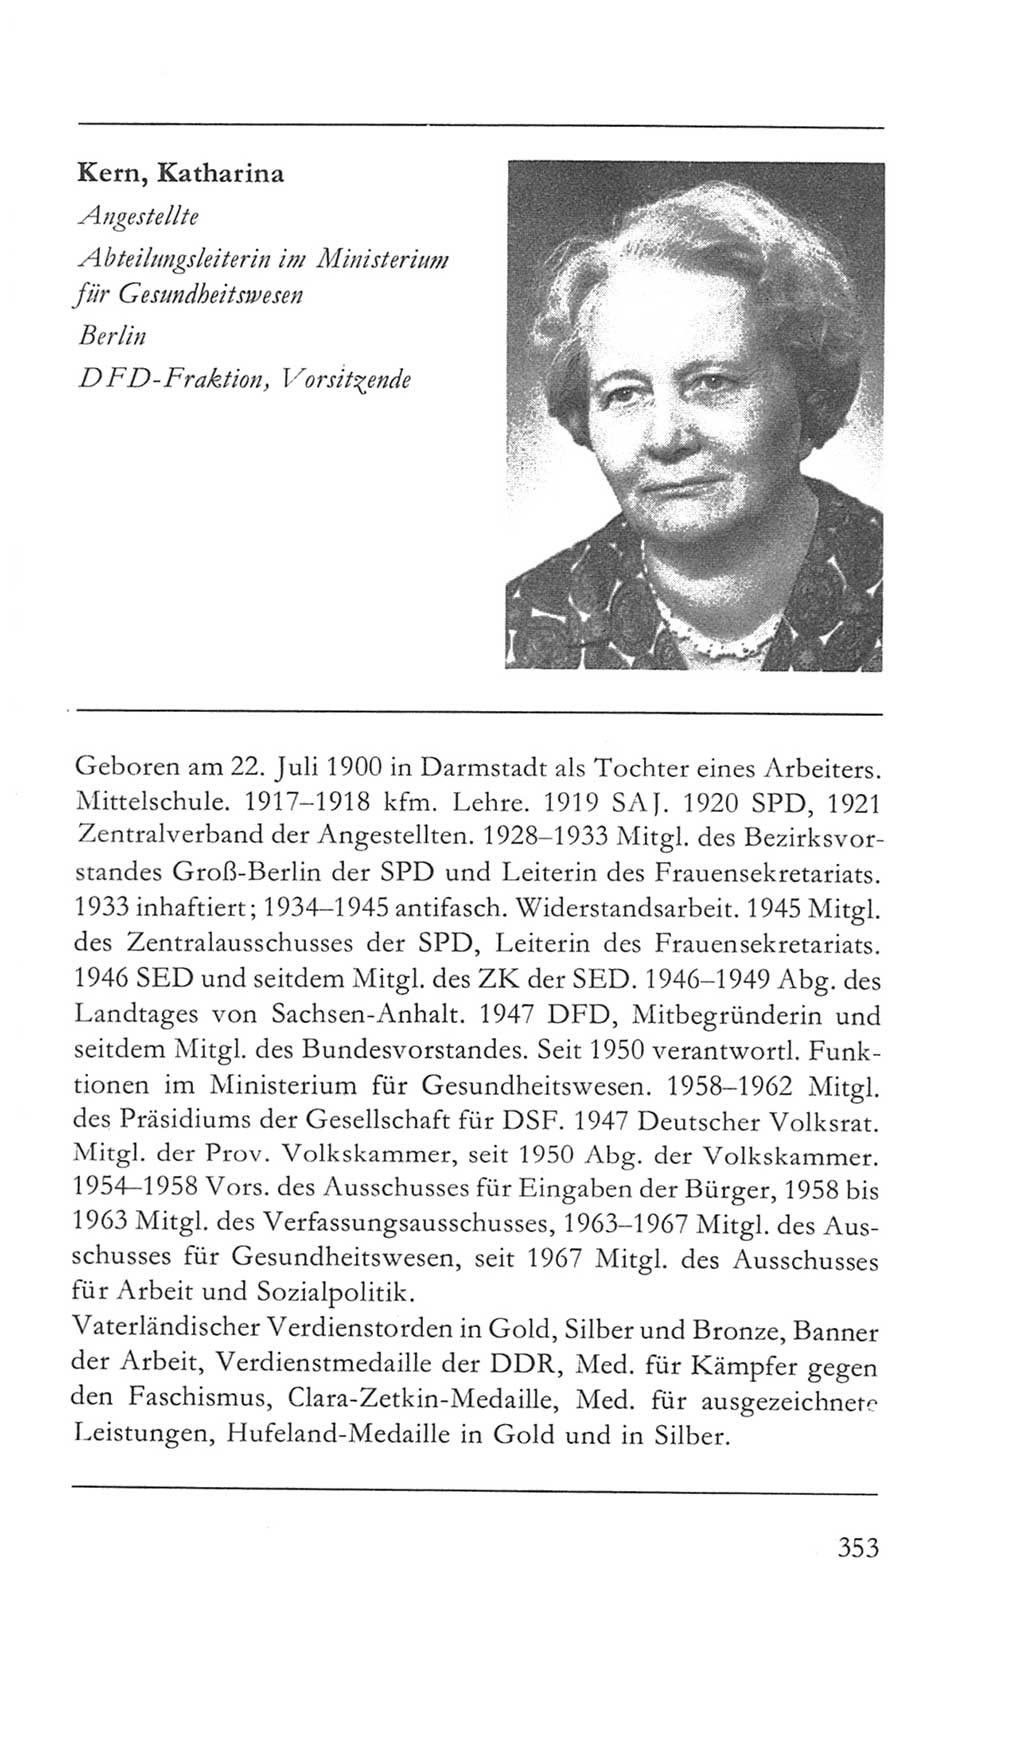 Volkskammer (VK) der Deutschen Demokratischen Republik (DDR) 5. Wahlperiode 1967-1971, Seite 353 (VK. DDR 5. WP. 1967-1971, S. 353)